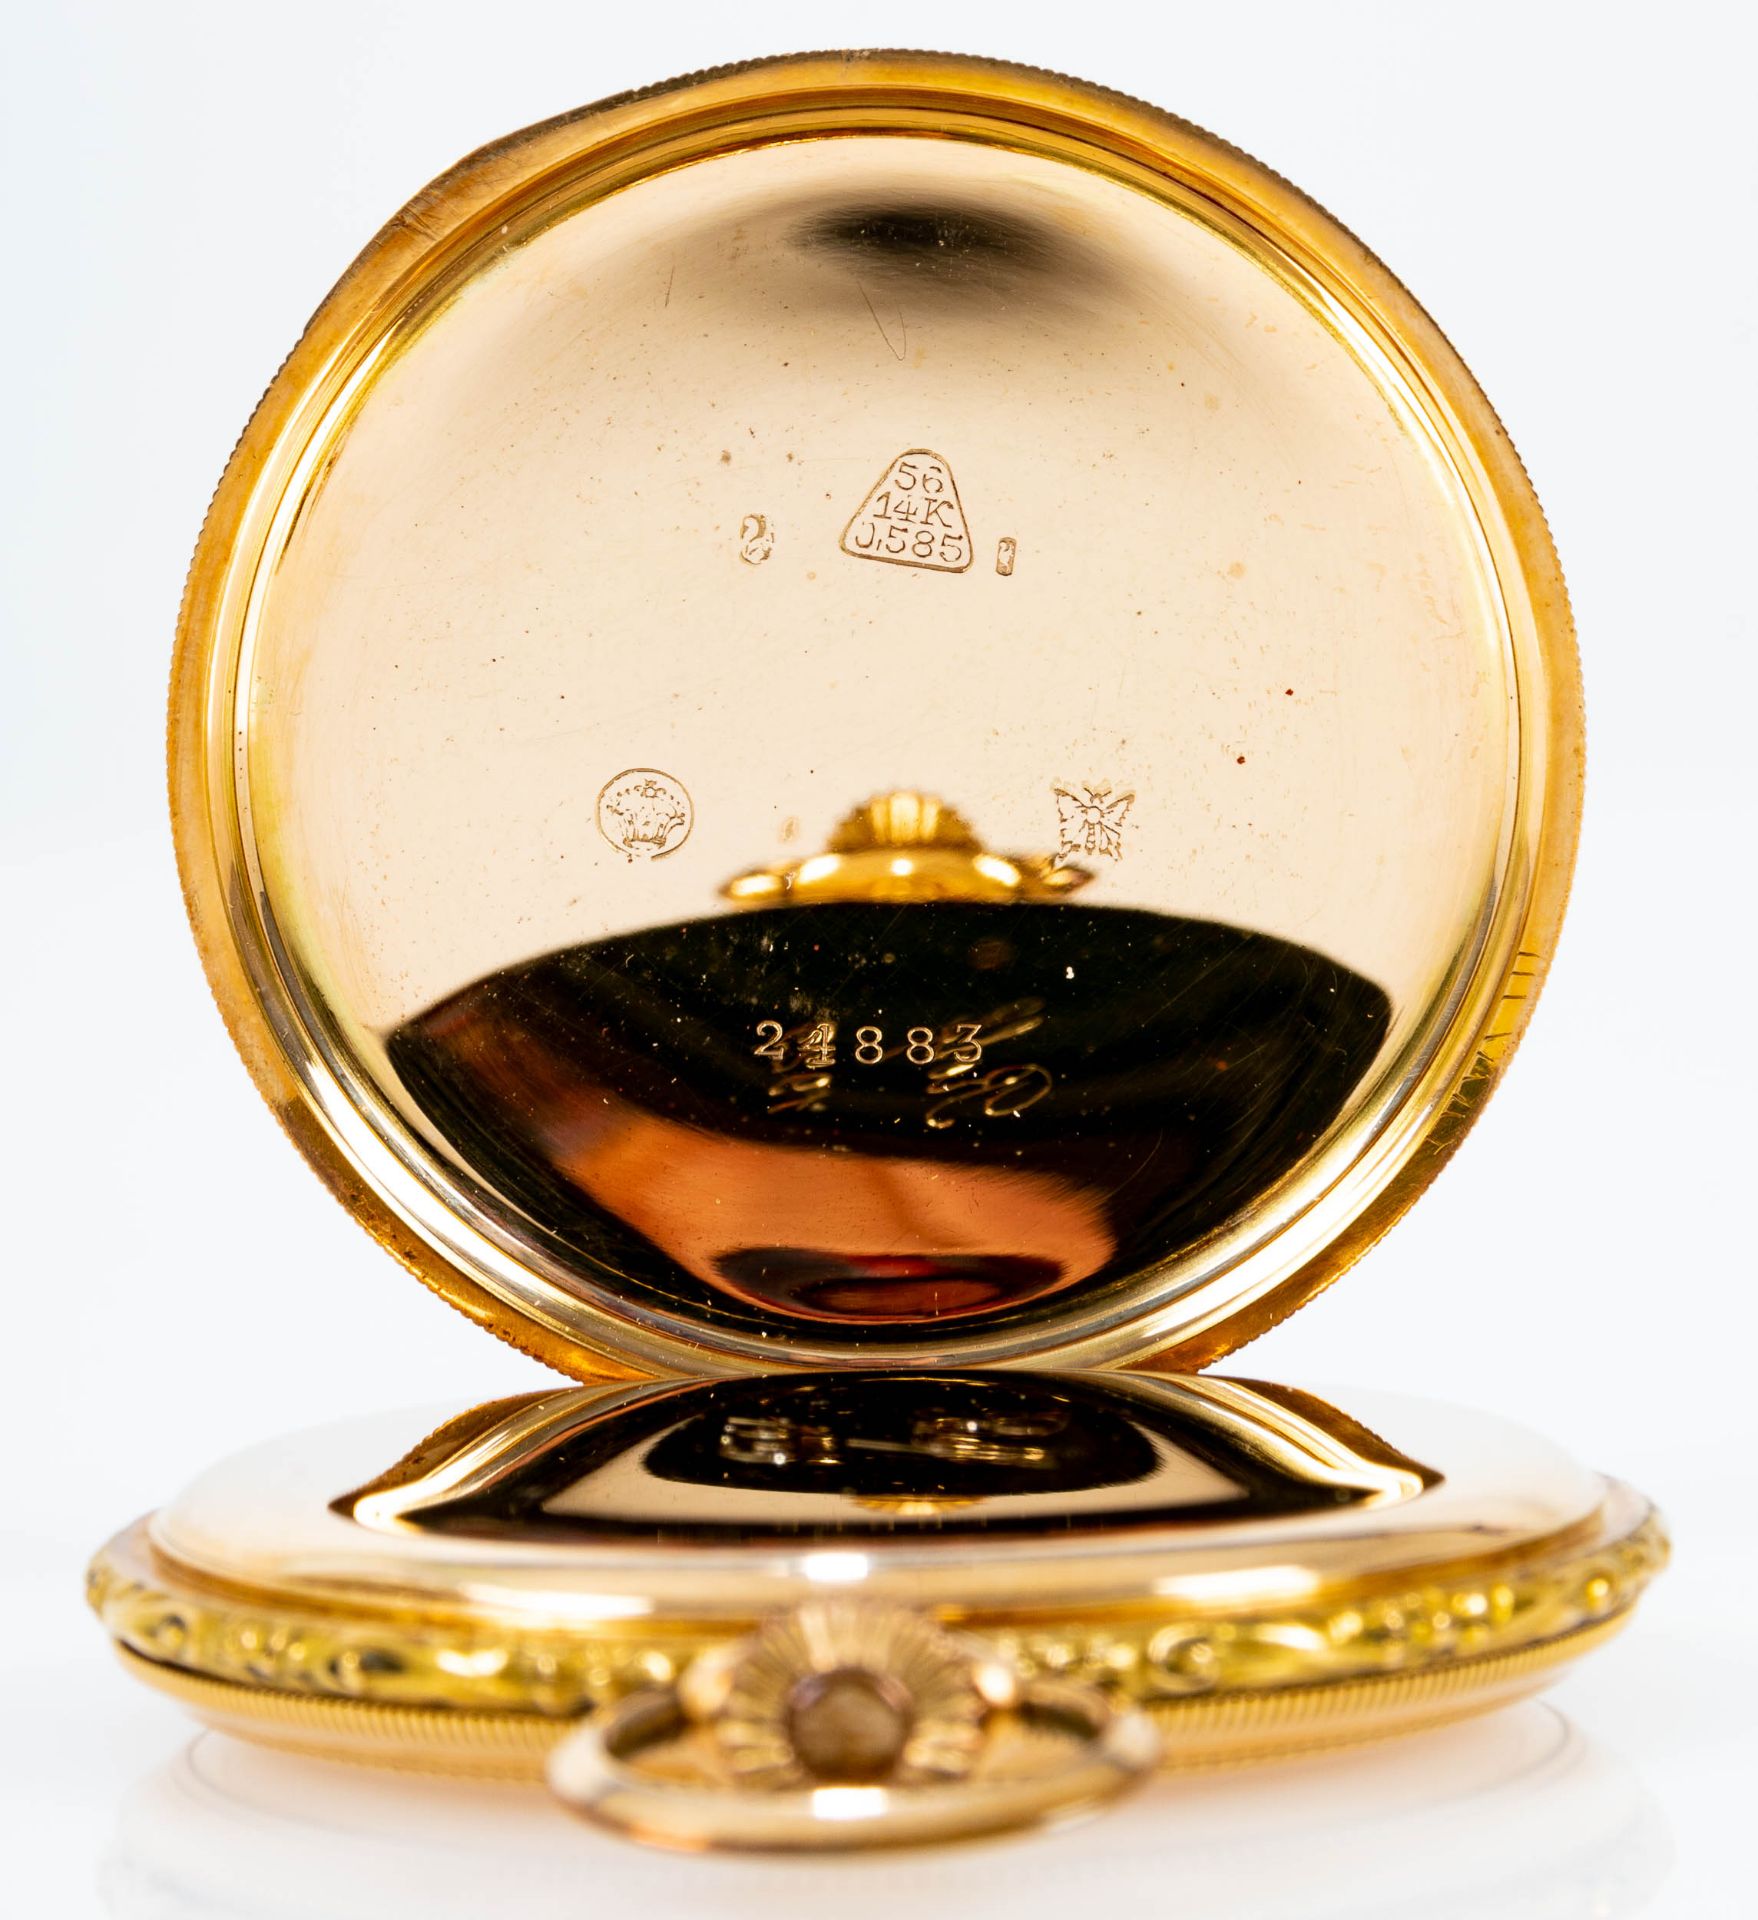 "Chronometre Geniale", goldene Herren - Sprungdeckeltaschenuhr; Ziffernblatt mit arabischen Zahlen, - Bild 6 aus 9